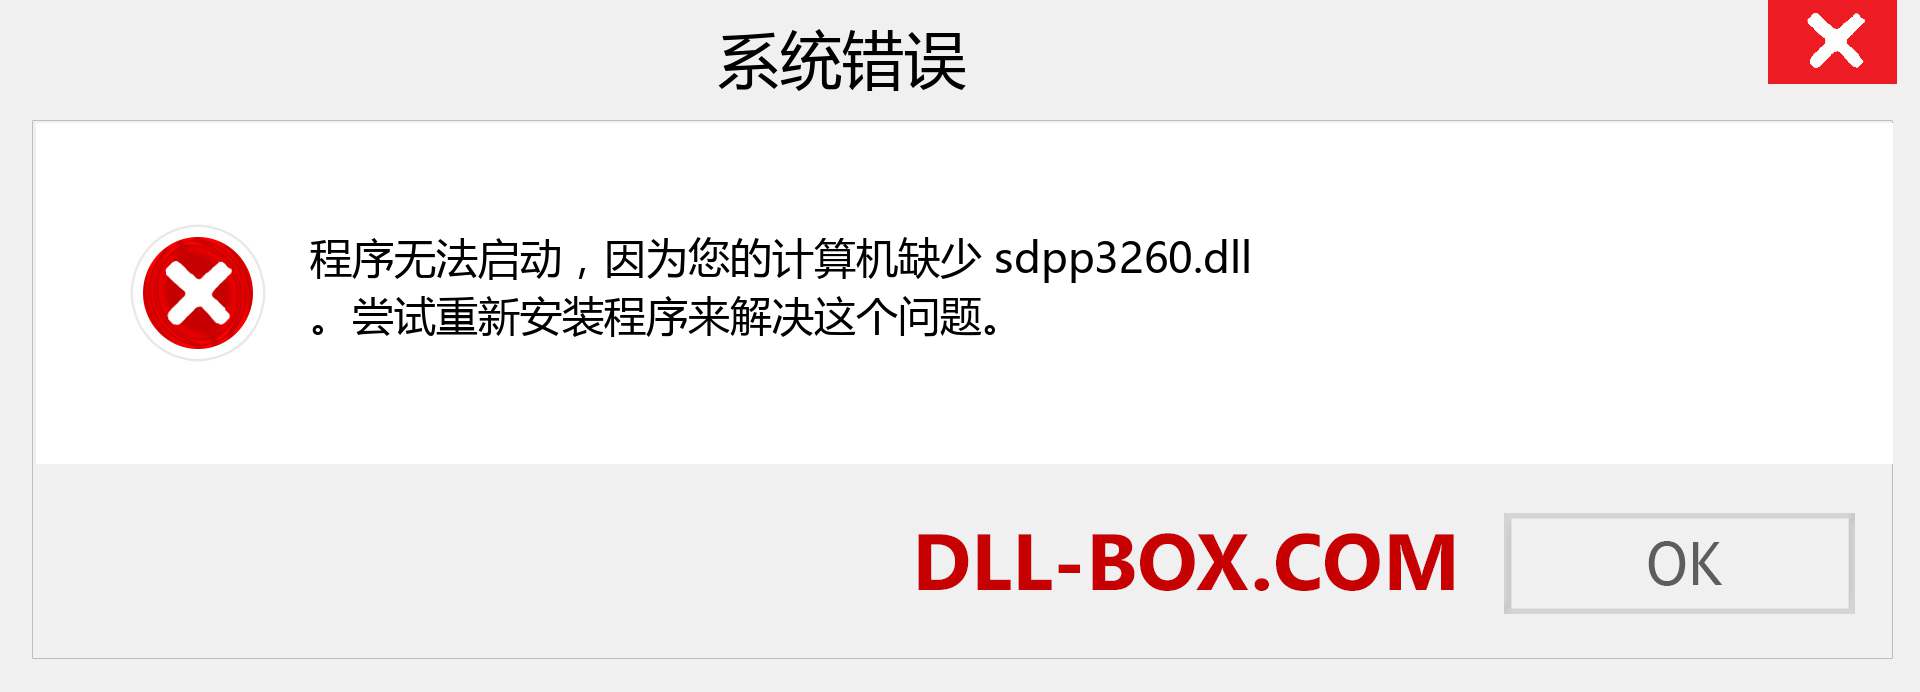 sdpp3260.dll 文件丢失？。 适用于 Windows 7、8、10 的下载 - 修复 Windows、照片、图像上的 sdpp3260 dll 丢失错误